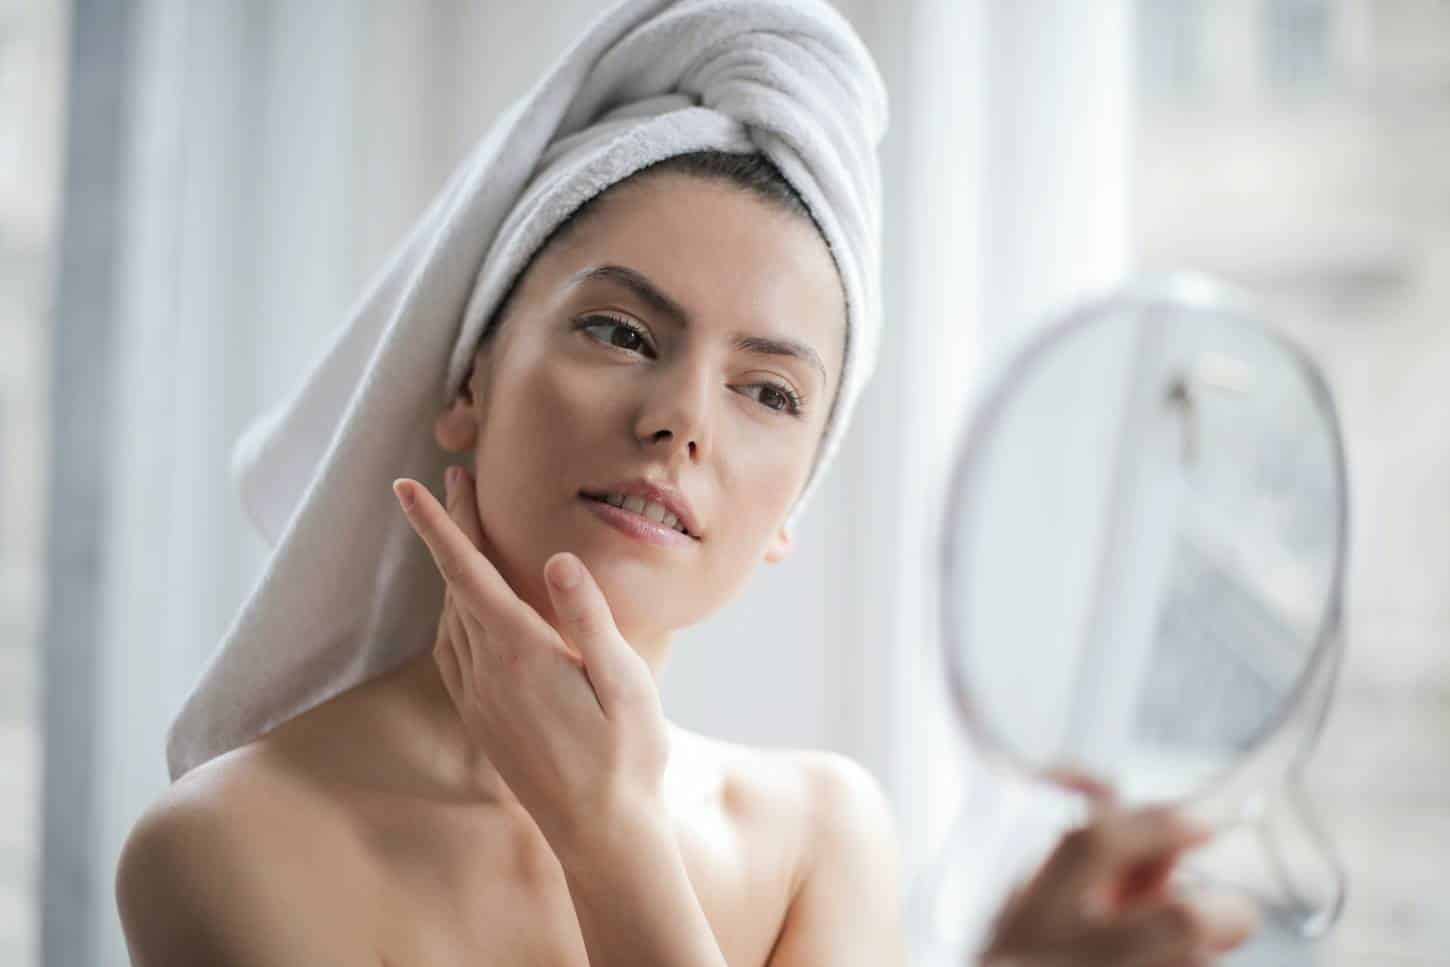 Chá branco e mamão: revitalize seu rosto com este simples truque natural